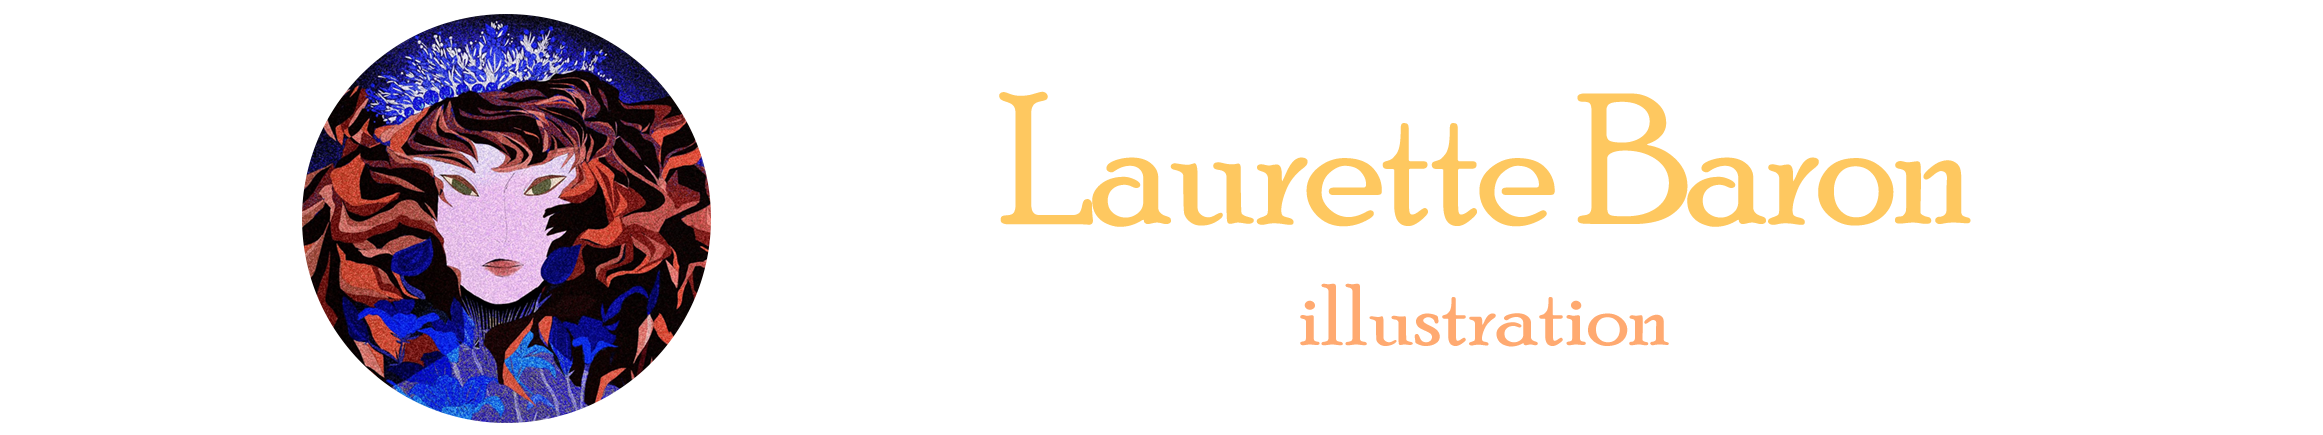 Laurette Baron